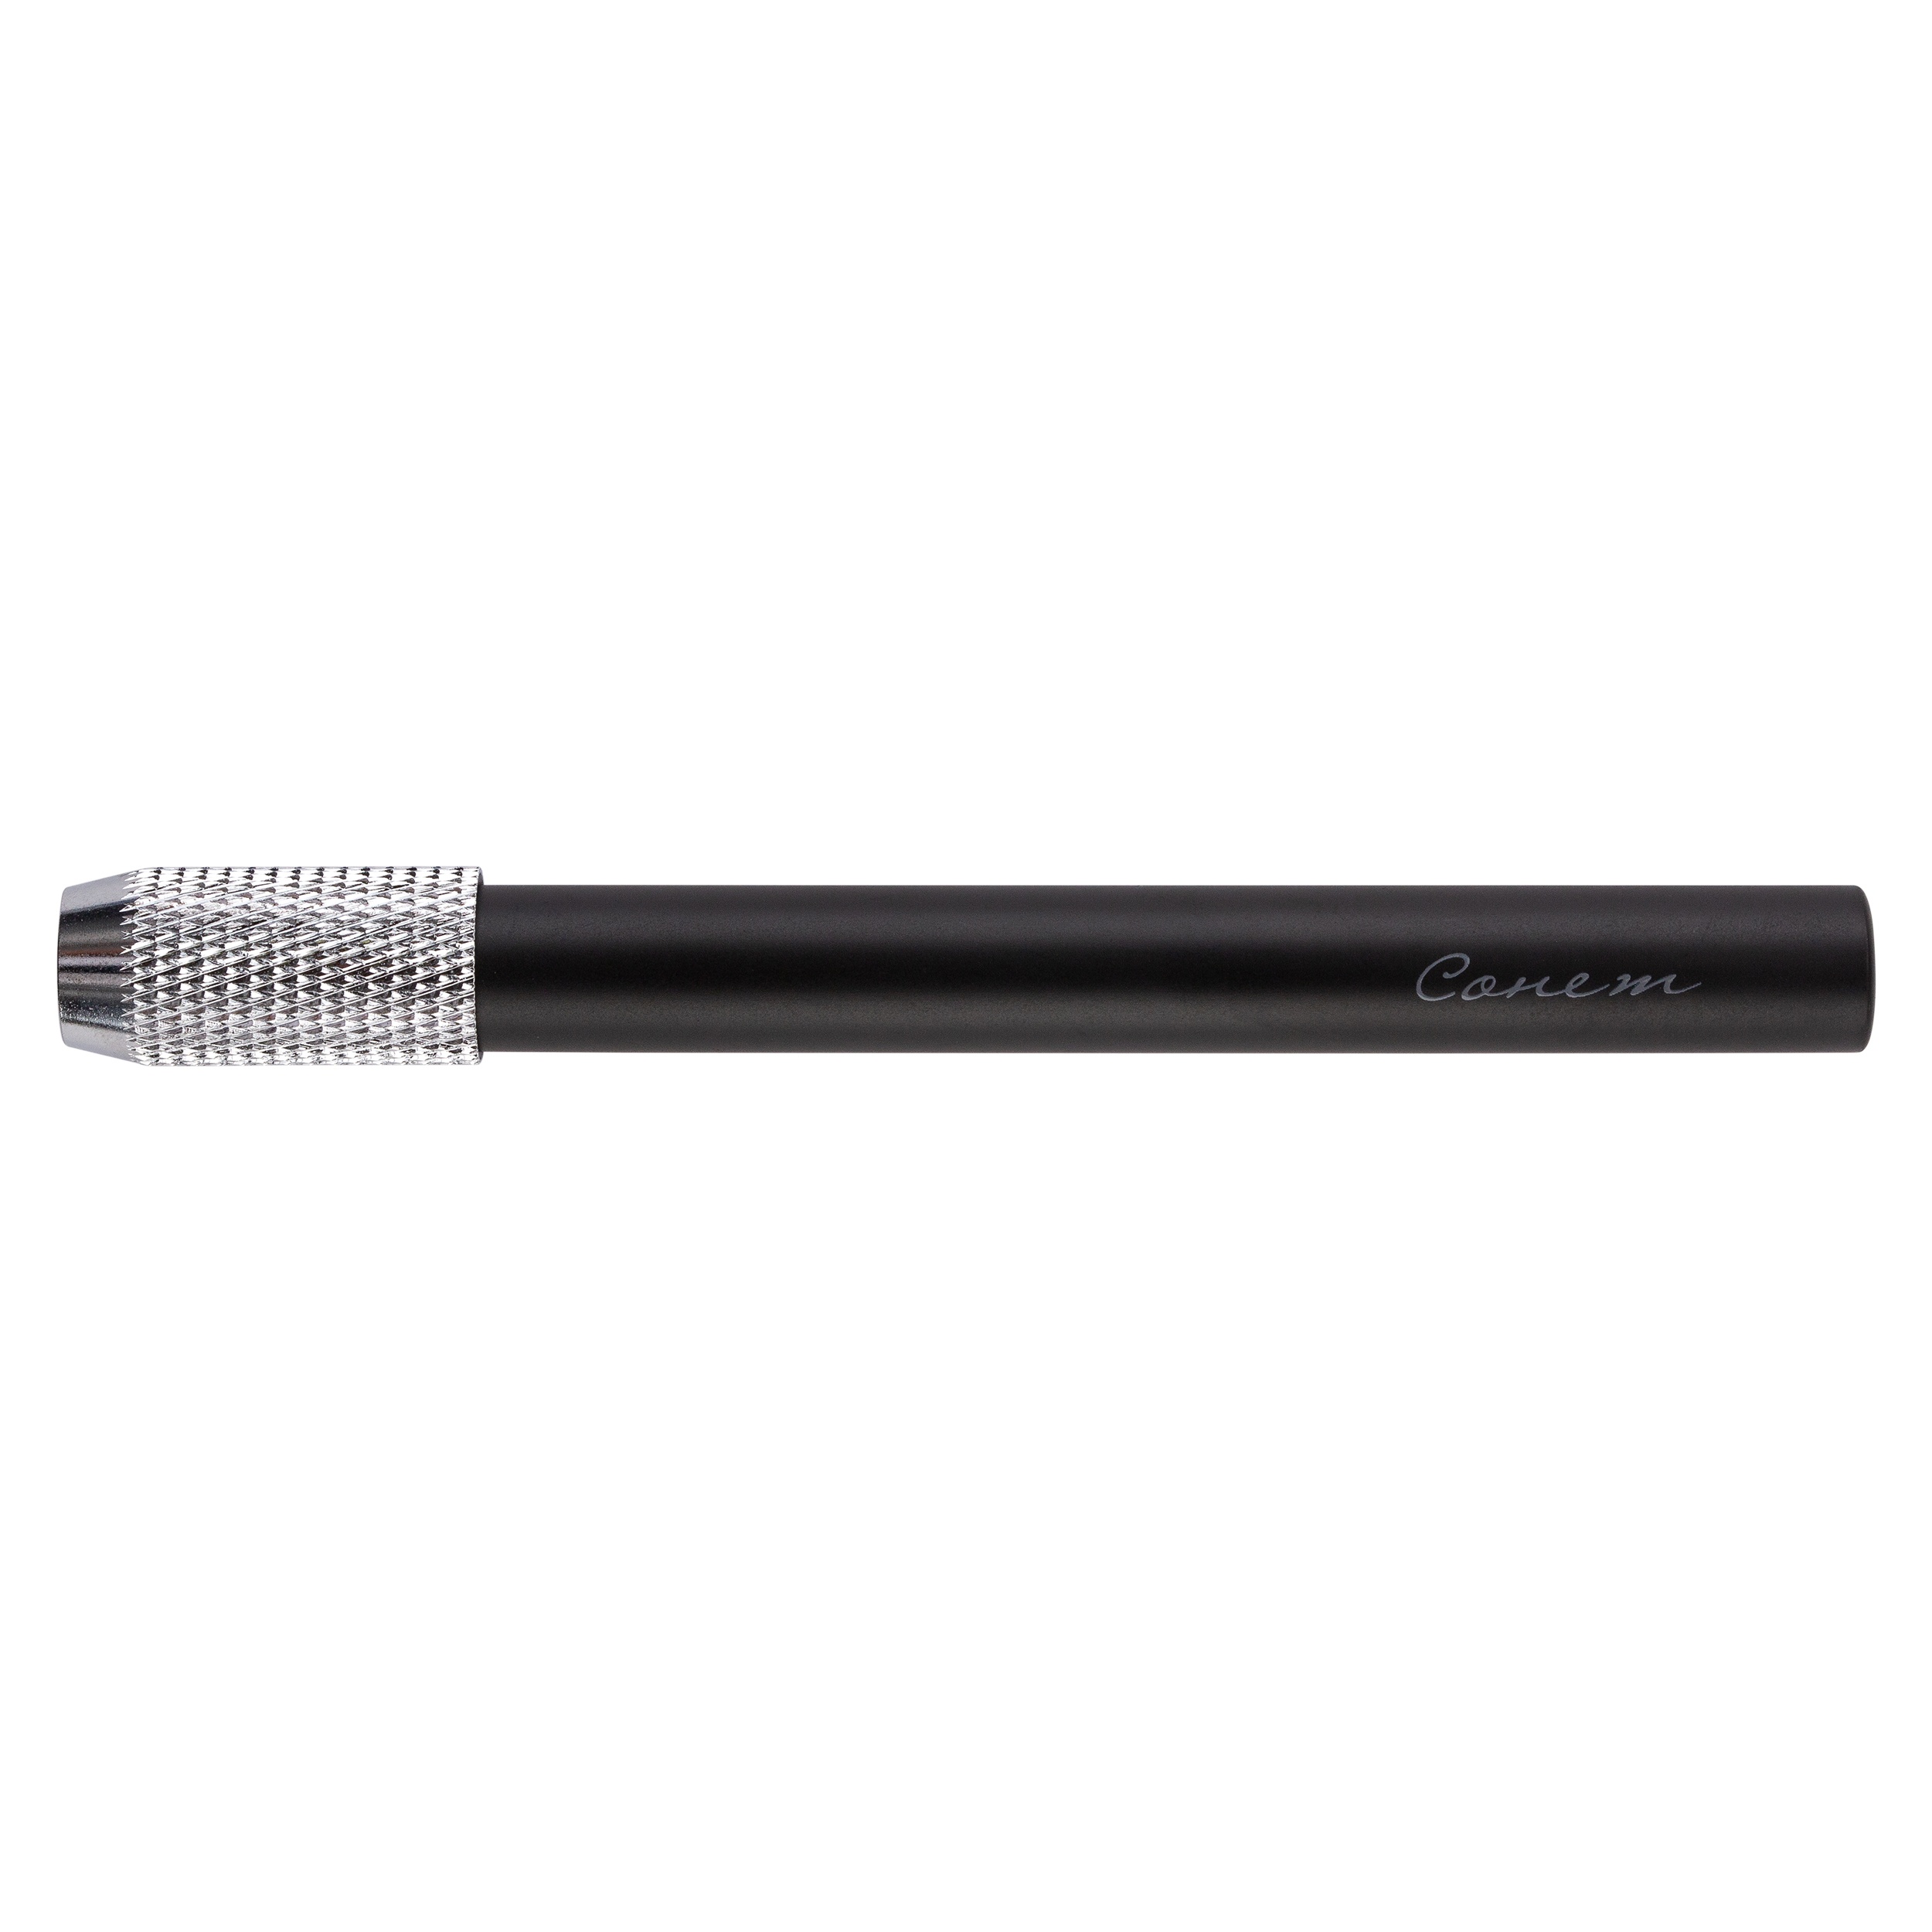 Удлинитель для карандаша СОНЕТ d:7-7,8мм металл черный по 127.00 руб от Невская палитра